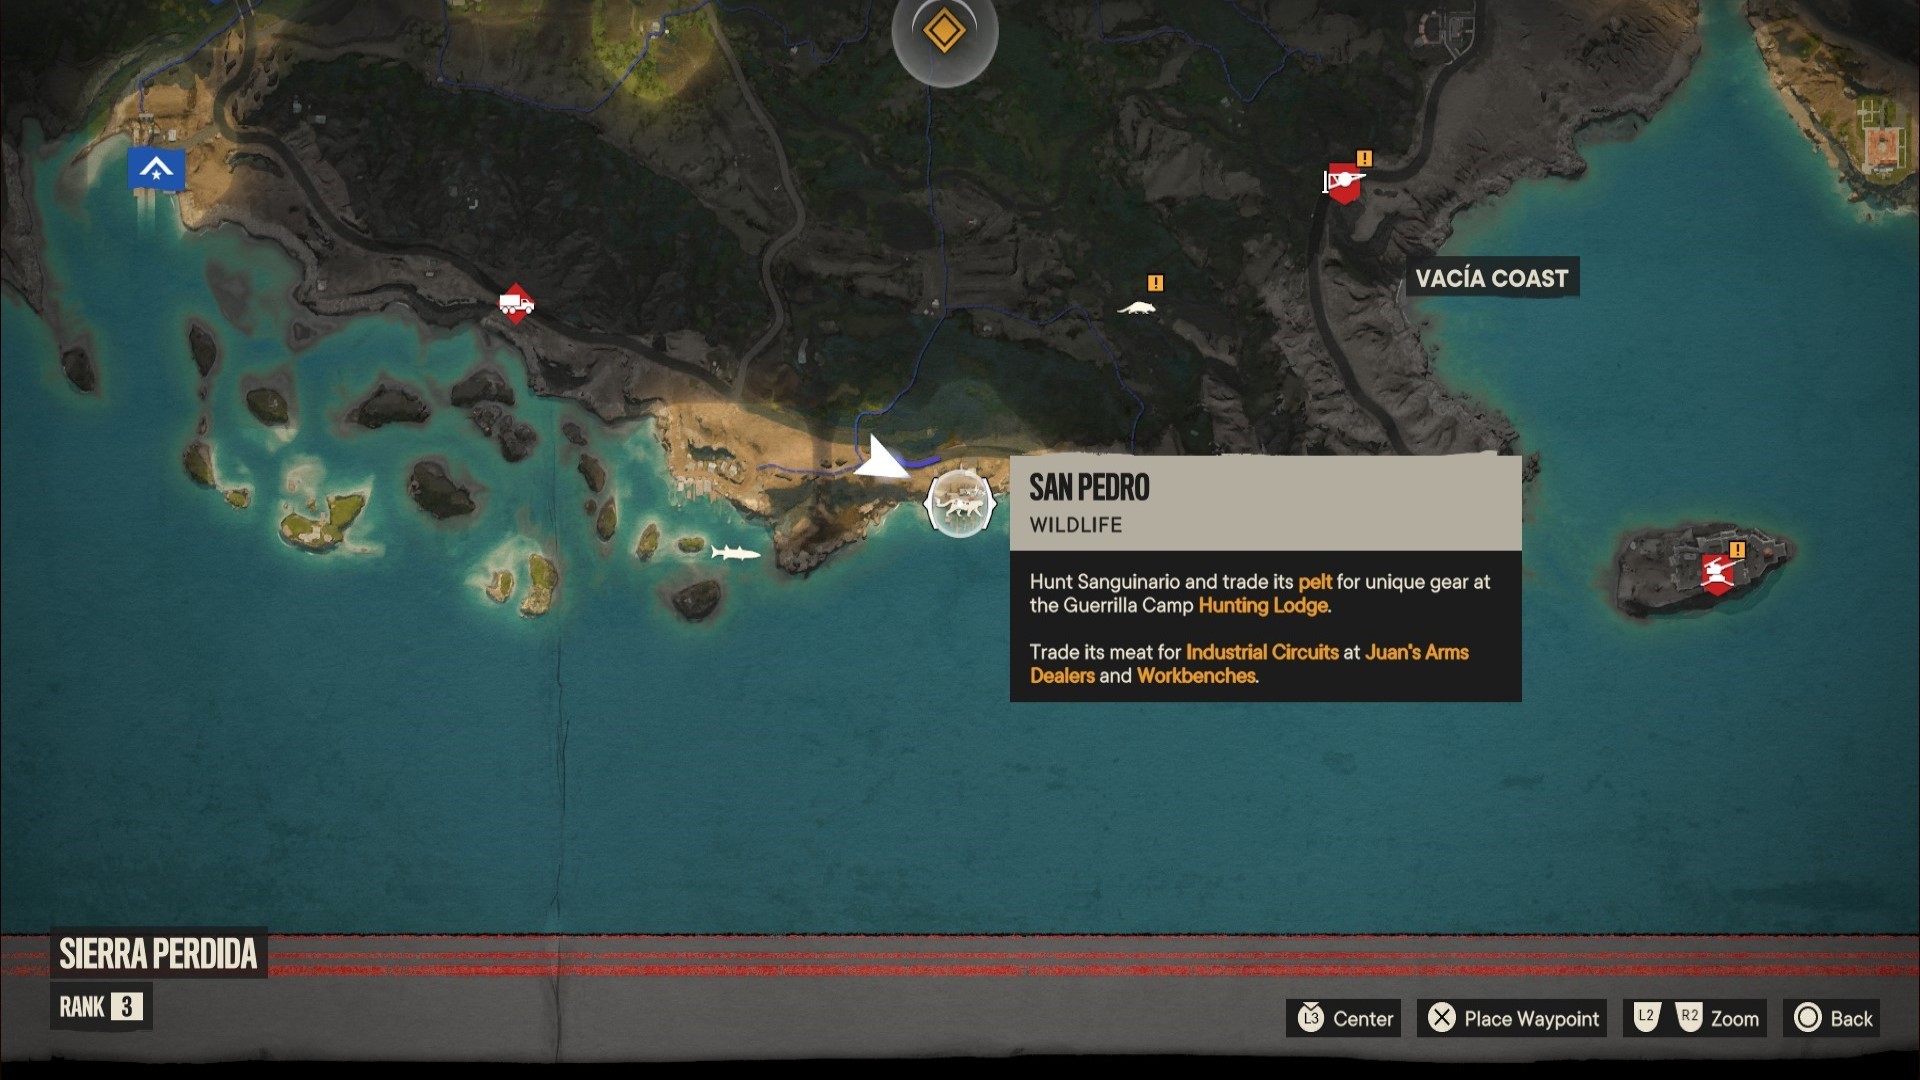 Far Cry 6 legendarne zwierze, Sanguinario, zaznaczone na mapie El Este.